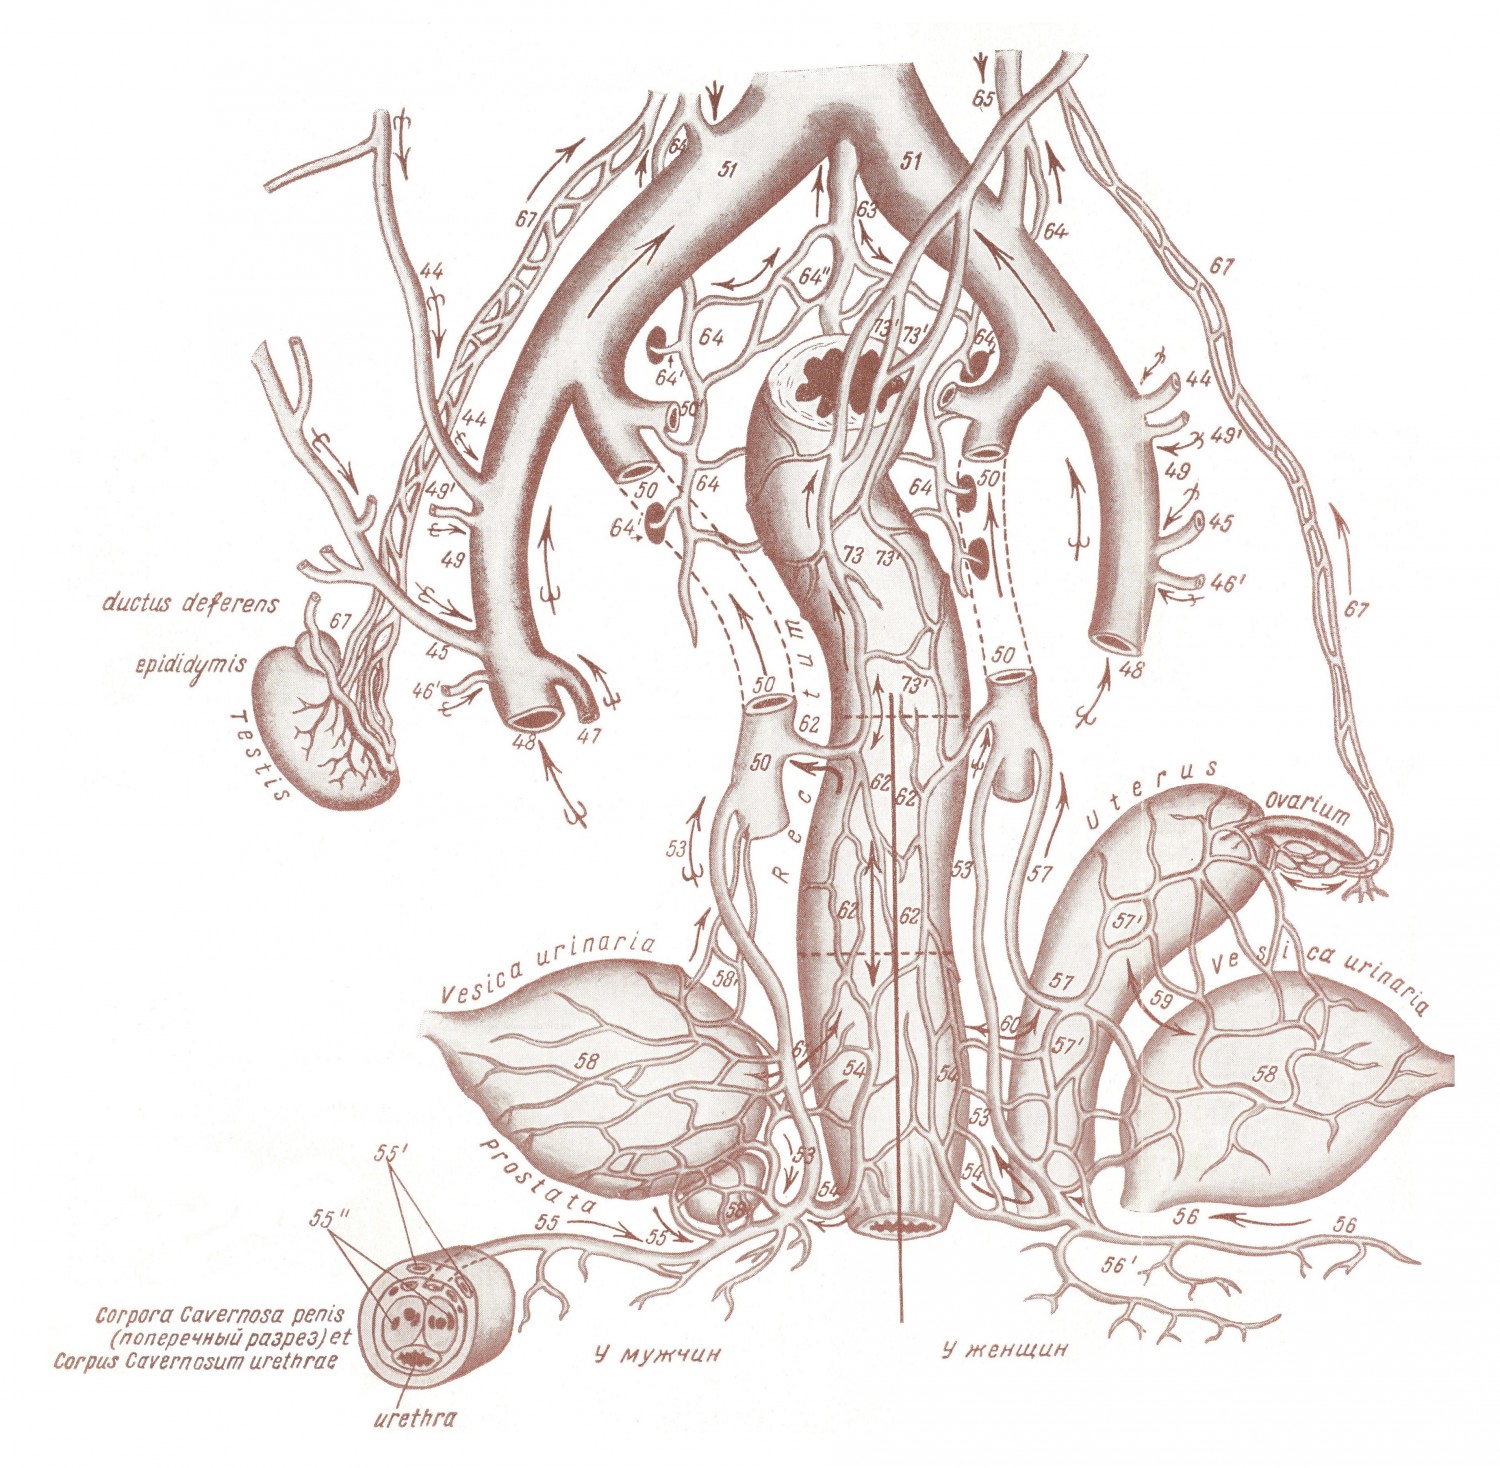 Схема анастомозов (связей) венозных сплетений тазовых внутренностей у мужчин и женщин